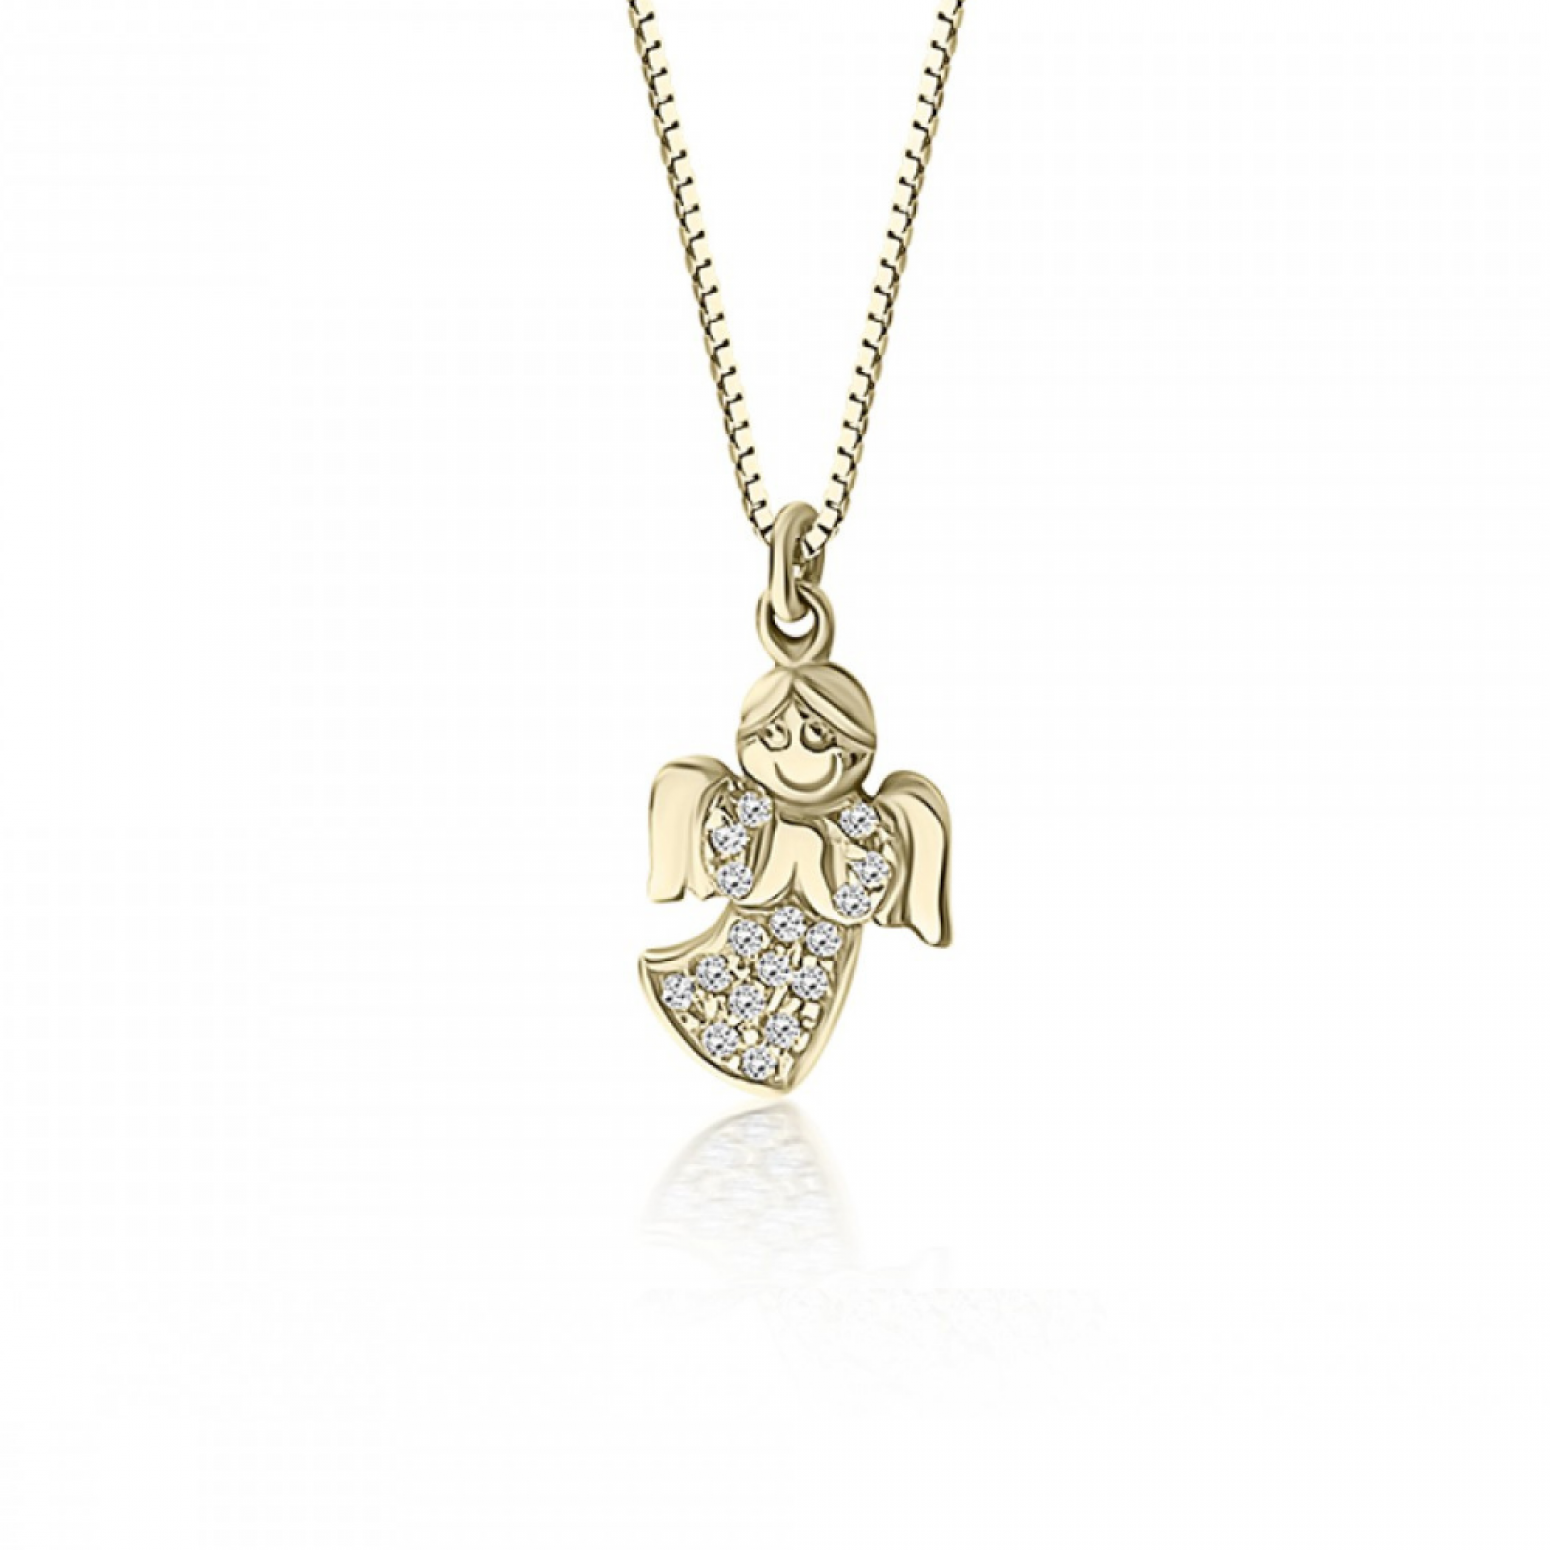 Angel necklace, Κ14 gold with zircon, ko1764 NECKLACES Κοσμηματα - chrilia.gr